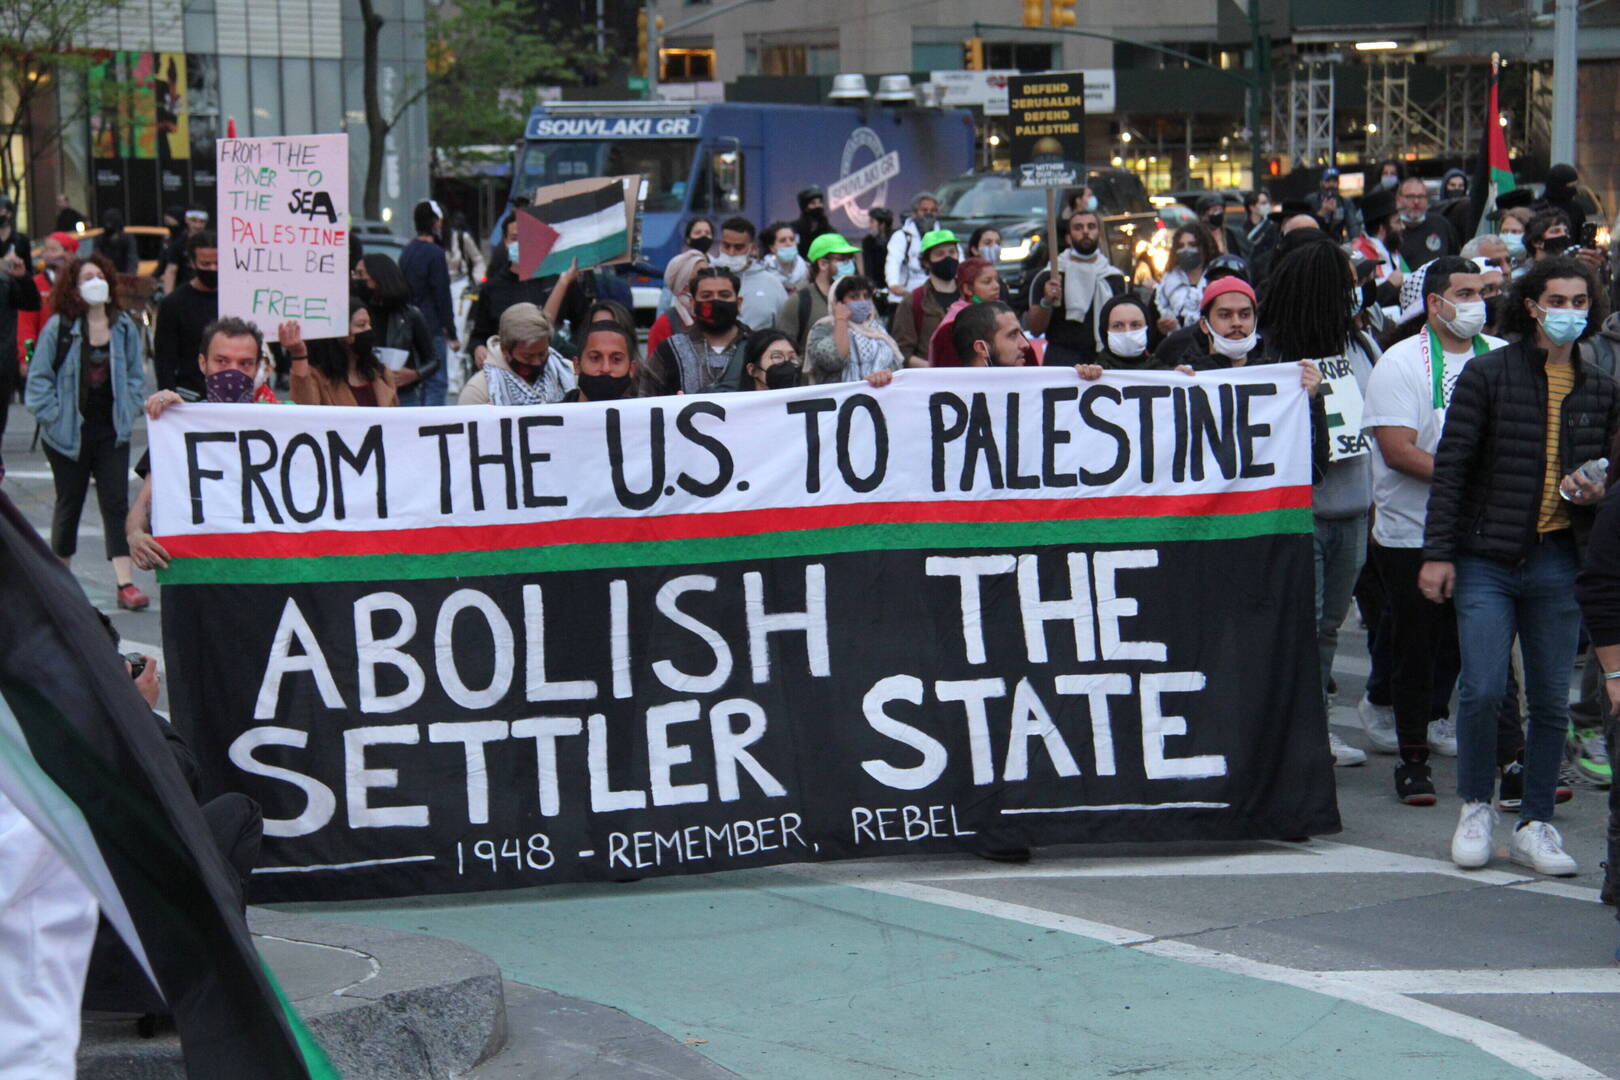 الولايات المتحدة.. أعمال عنف تستهدف المظاهرات المؤيدة لفلسطين (فيديوهات)